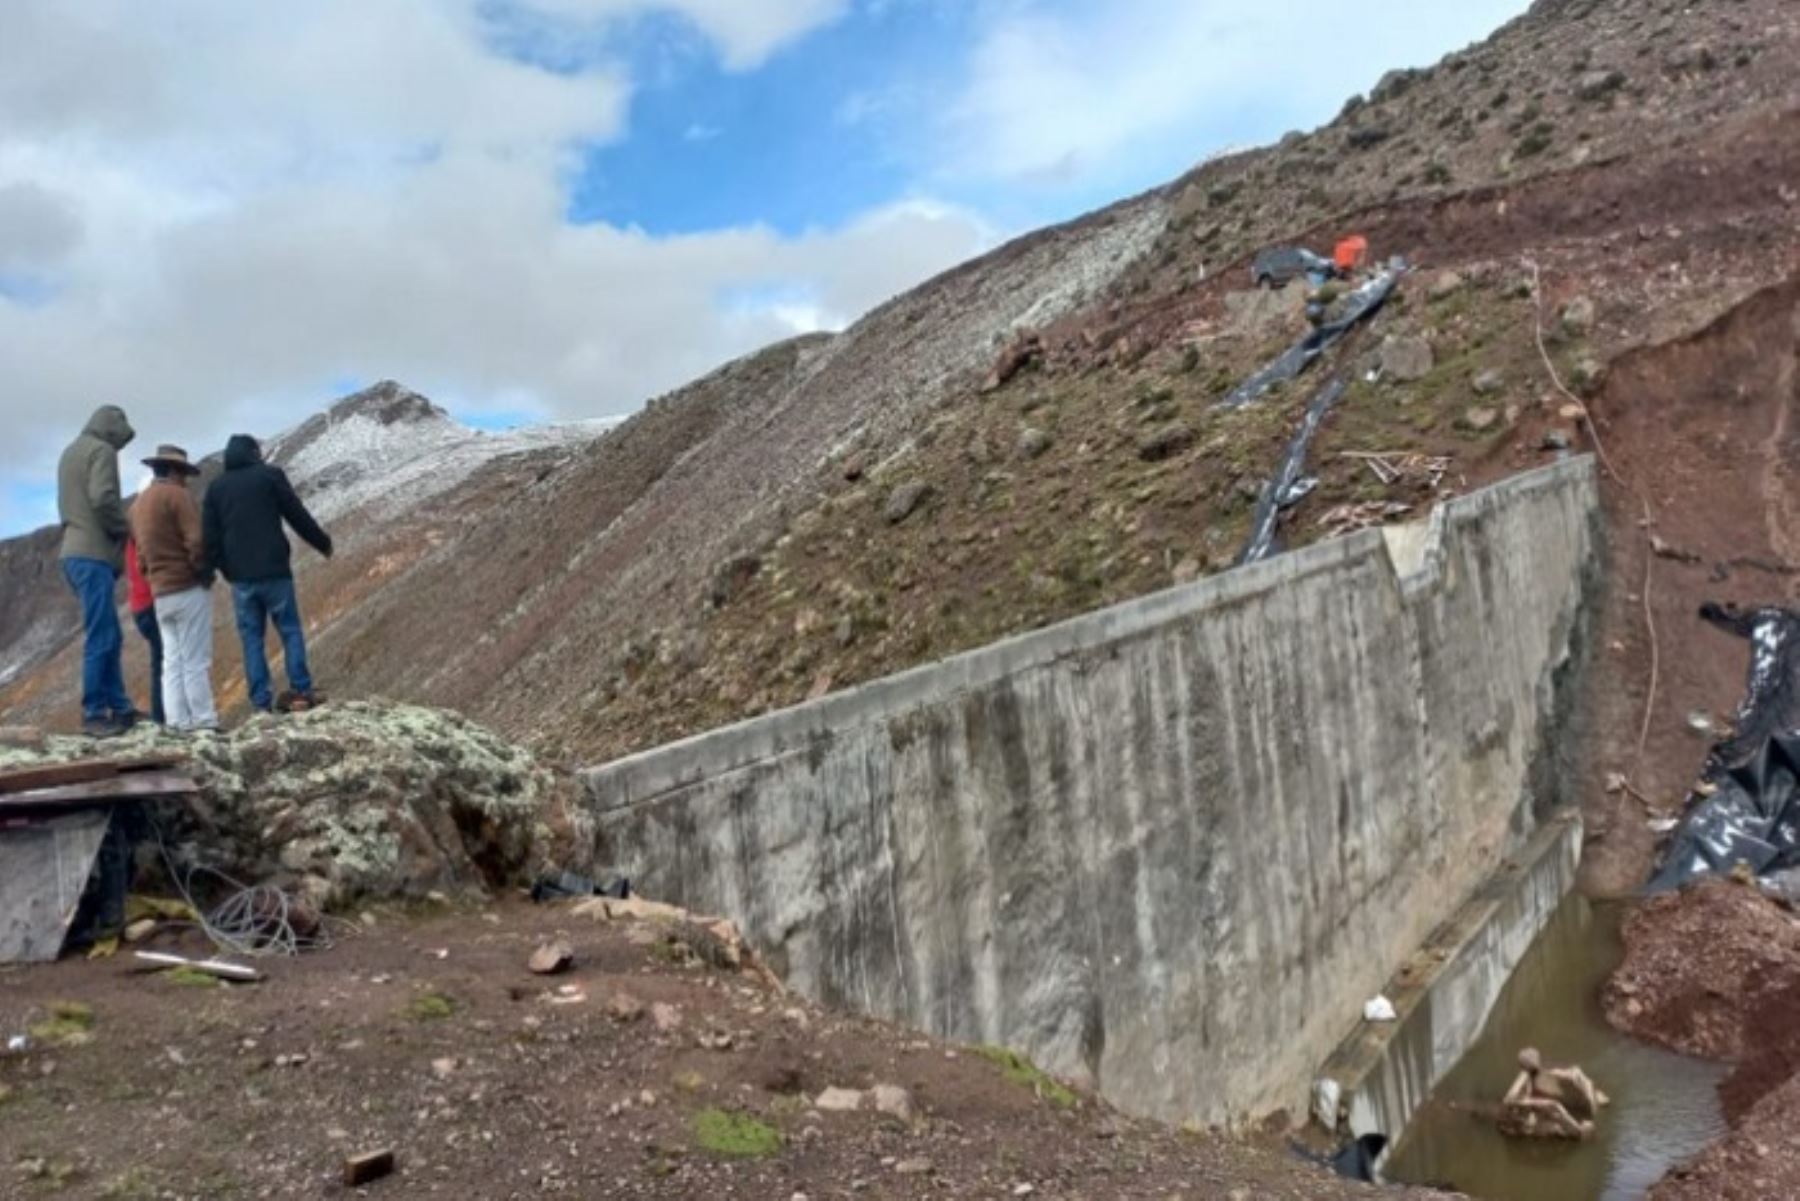 La represa Ccarccar permitirá almacenar agua de los puquiales y afluentes para evitar inundaciones y aprovechar el recurso hídrico para el consumo humano y el riego de cultivos.